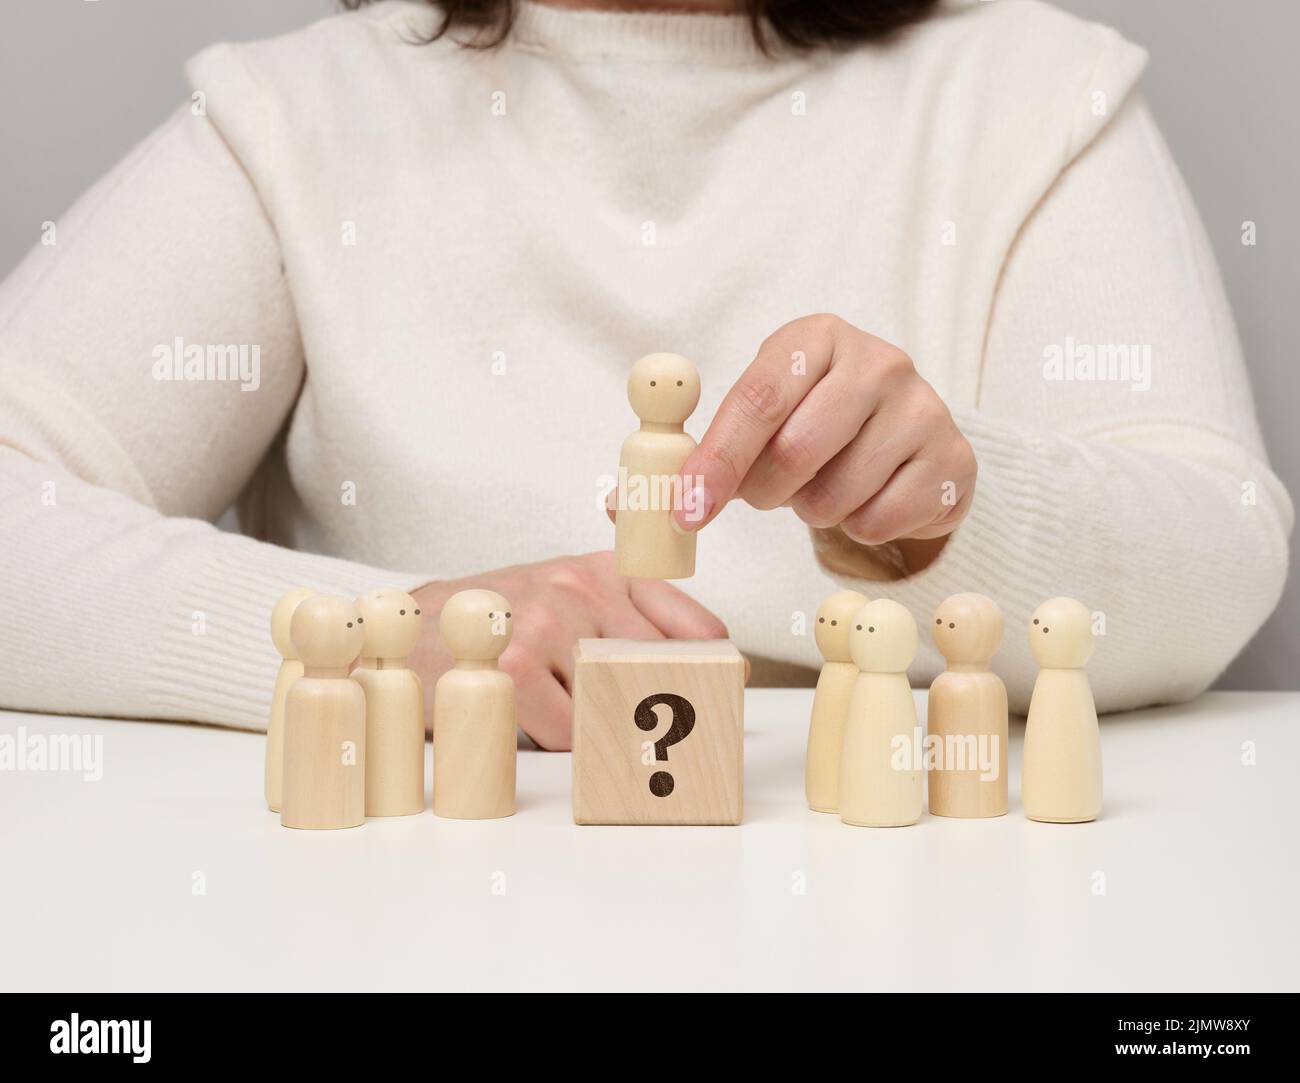 La femme garde la figurine en bois rouge séparée du groupe. Concept de développement de carrière, personne unique. Banque D'Images